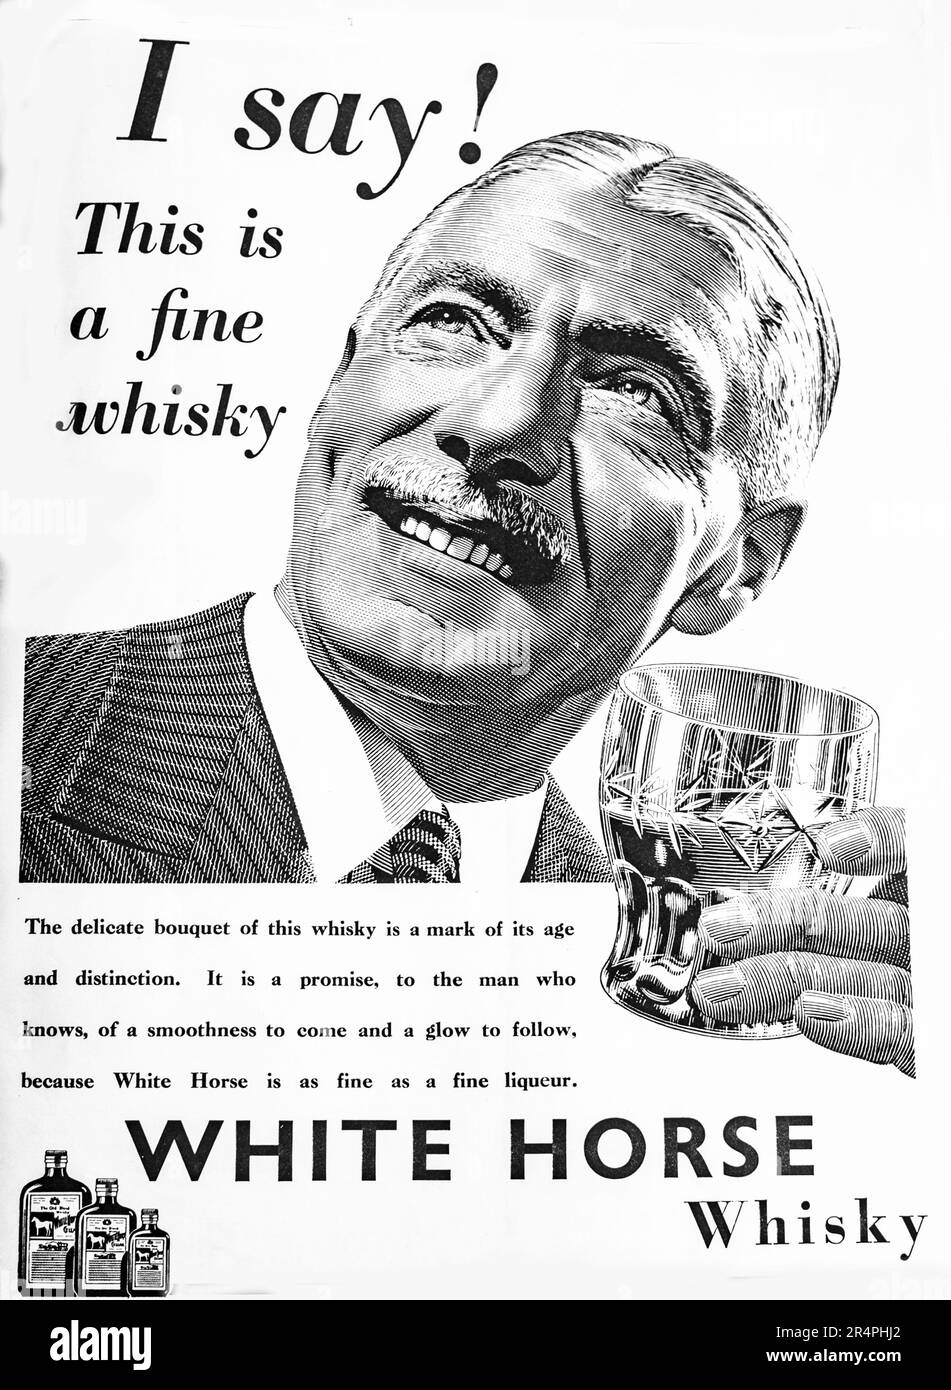 Die Marke, die 1941 für White Horse Whisky angezeigt wurde, kann ihre Geschichte bis ins Jahr 1861 zurückverfolgen und wurde in Edinburgh destilliert. Die Marke hat mehrmals den Besitzer gewechselt und befindet sich derzeit im Besitz von Diageo und befindet sich noch in der aktiven Produktion. Stockfoto